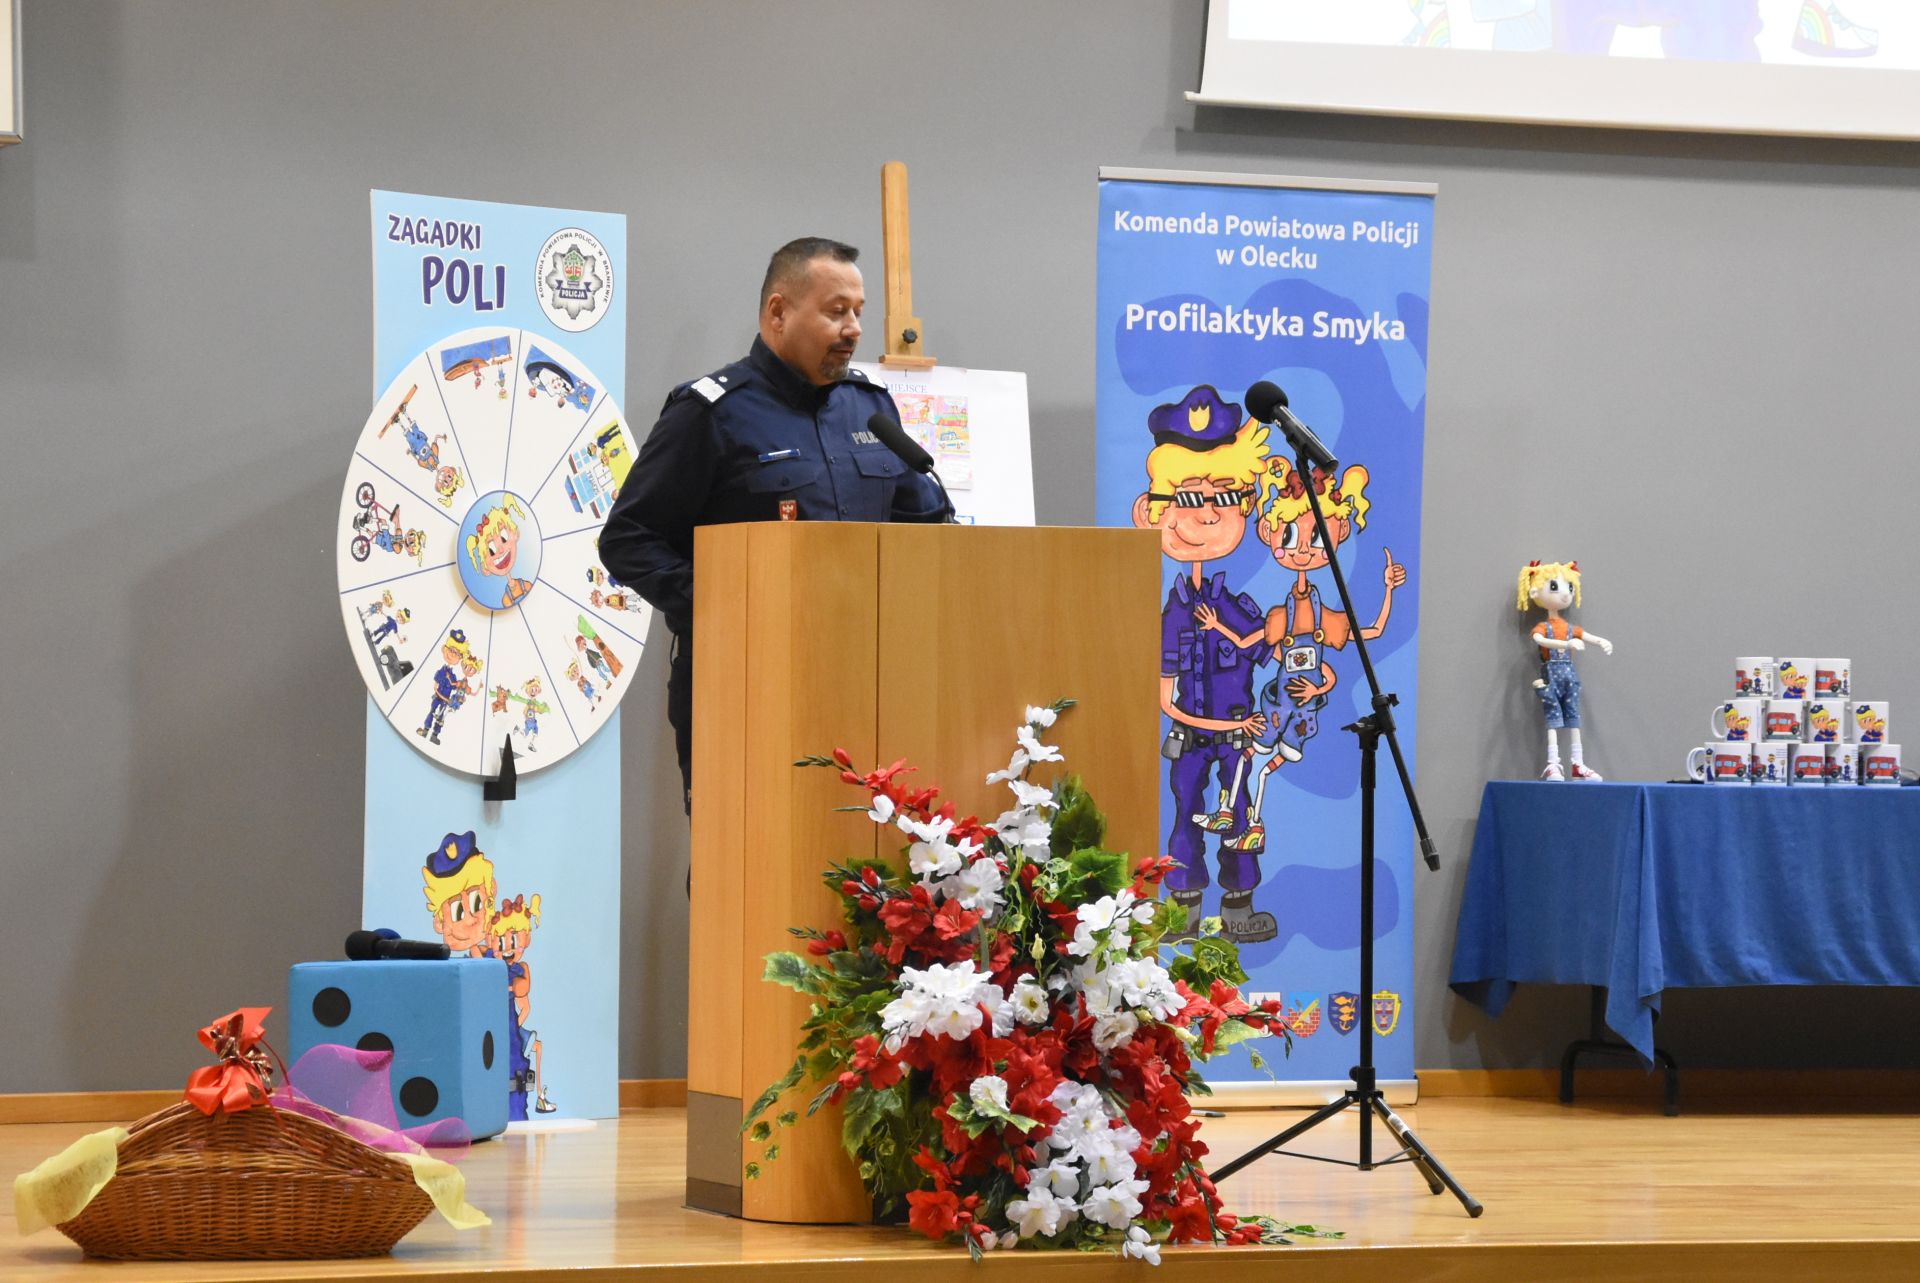 Gala podsumowująca program profilaktyczny "Profilaktyka smyka" - przemowa Wojewódzkiego Komendanta Policji